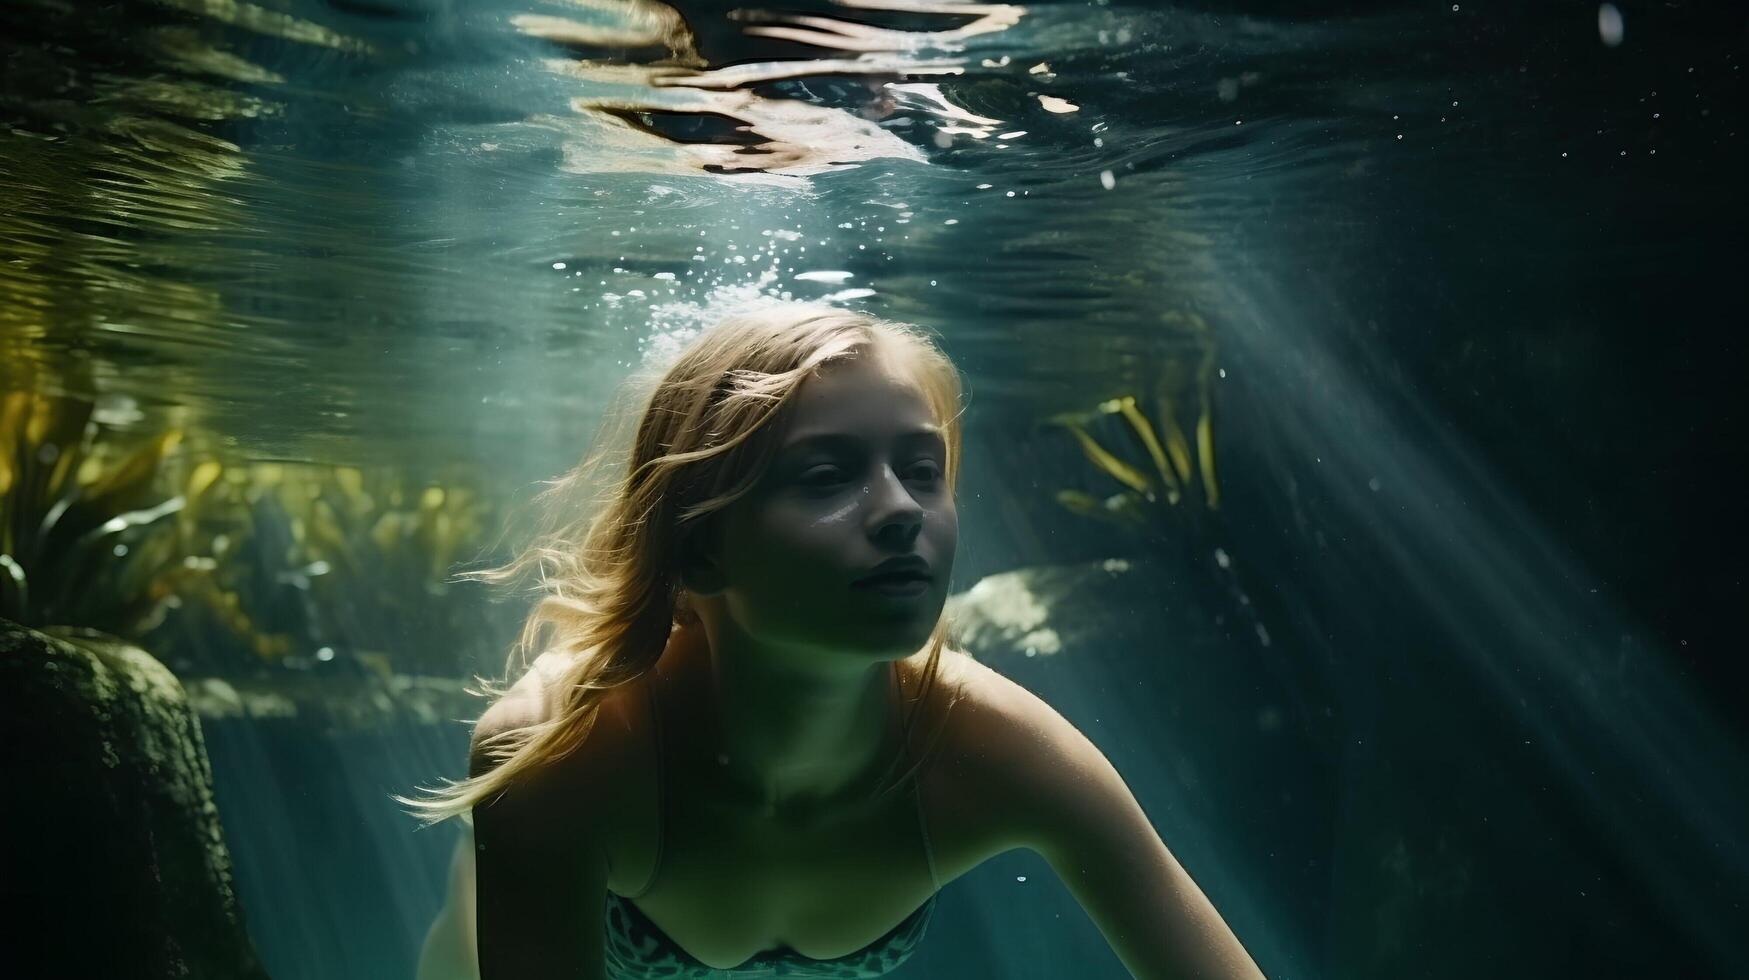 girl in a swimsuit, swimming underwater, full frame. art photo